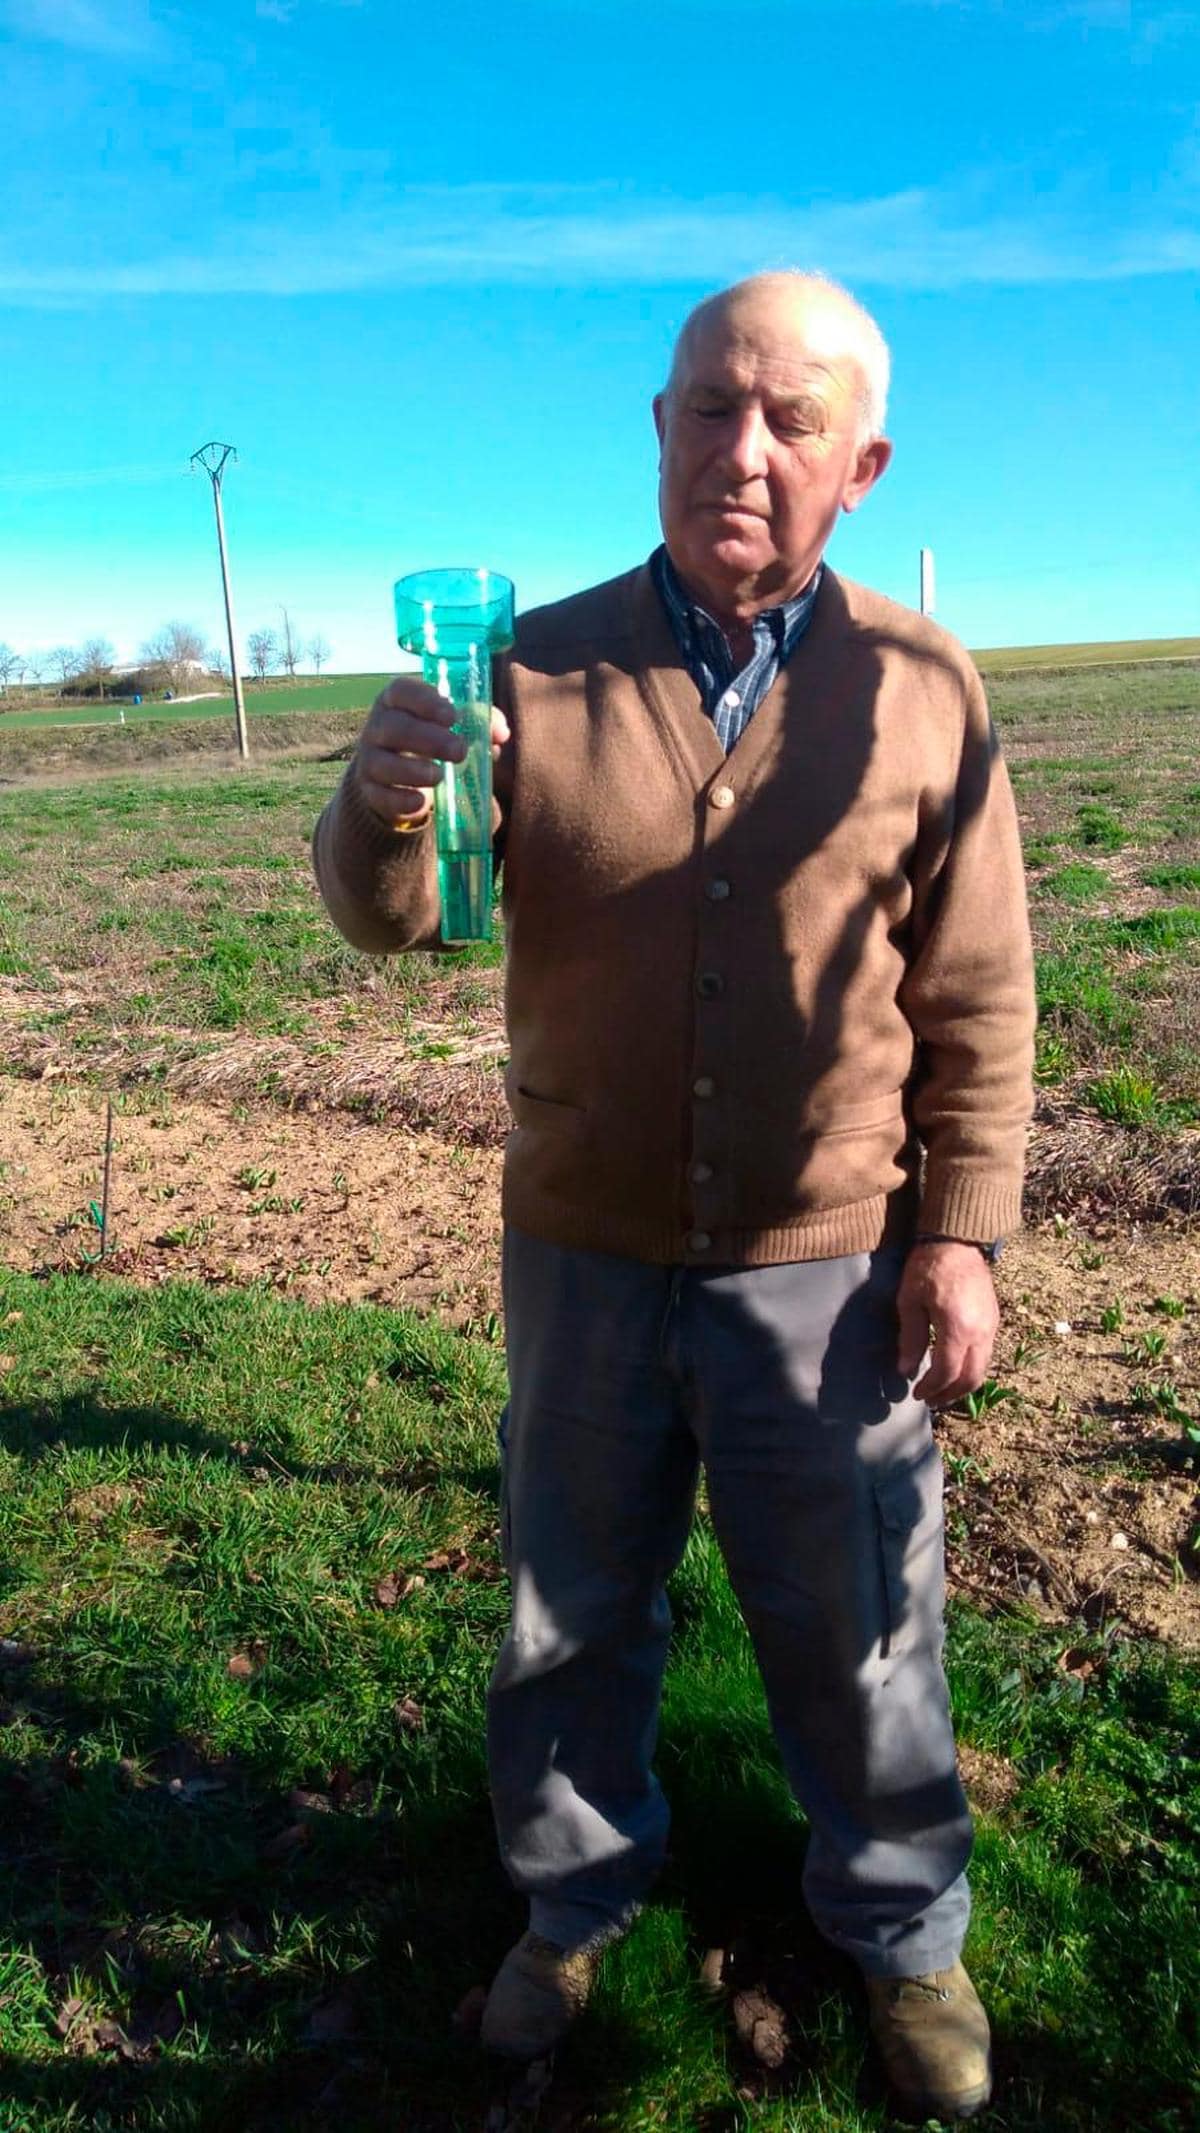 Ramiro muestra el pluviómetro, con 12 litros.